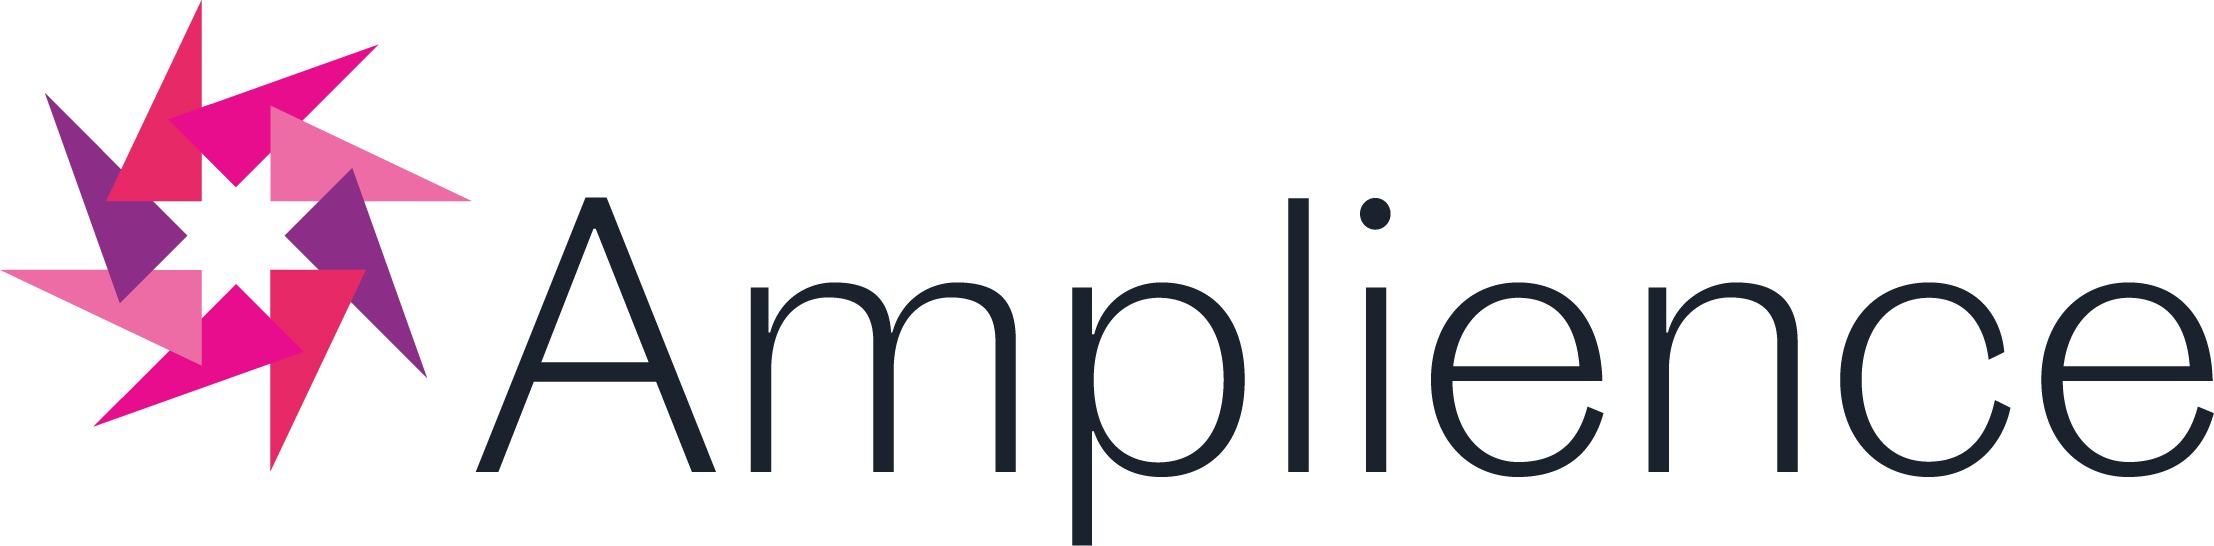 amplience-landscape-colour-black-logo.jpg